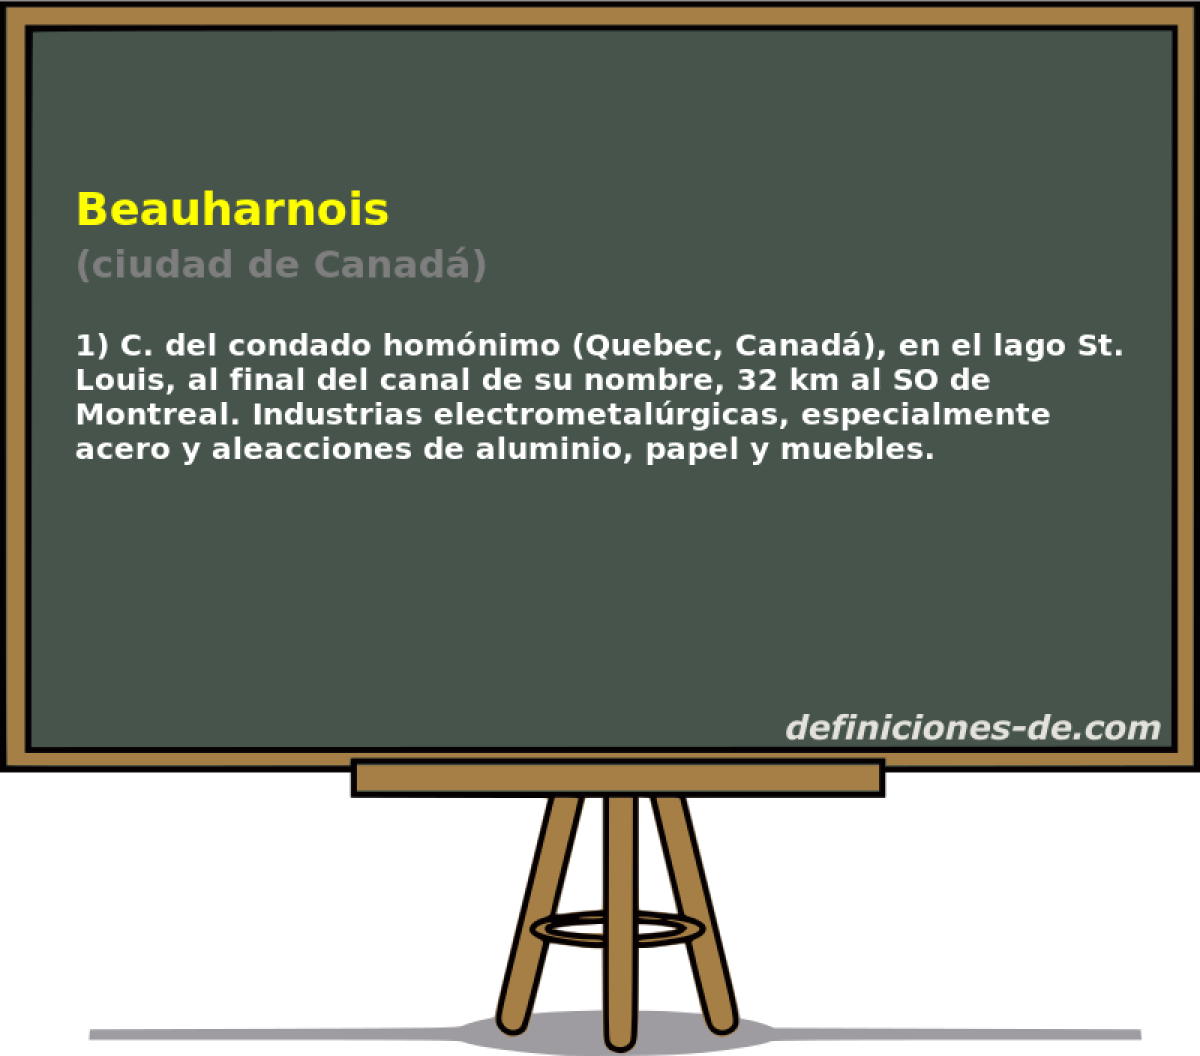 Beauharnois (ciudad de Canad)